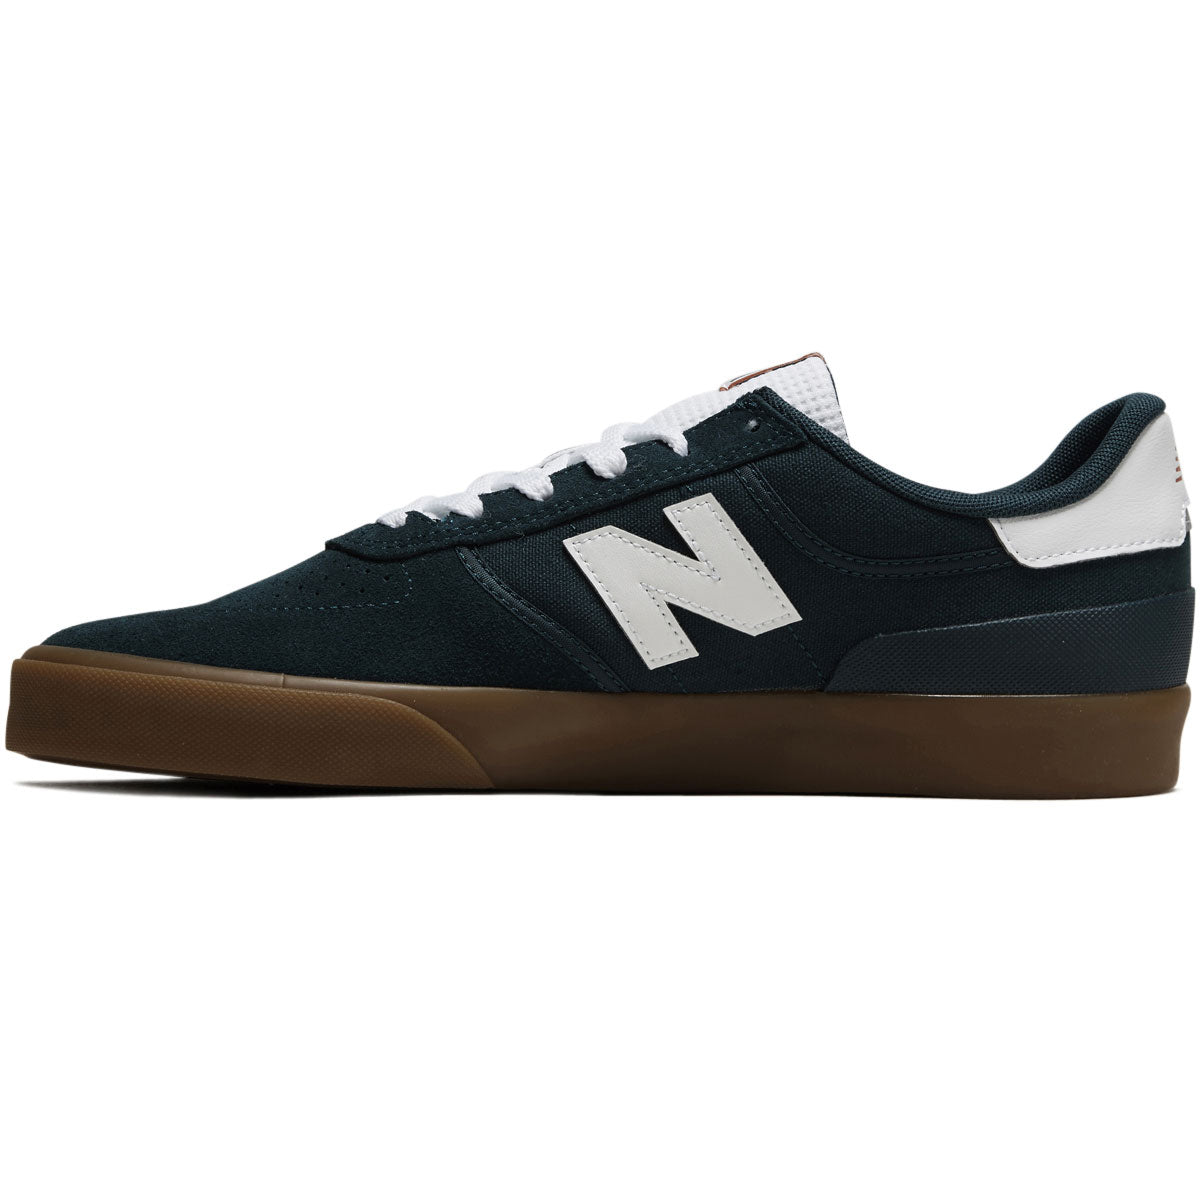 New Balance 272 Shoes - Vintage Teal/Gum image 2